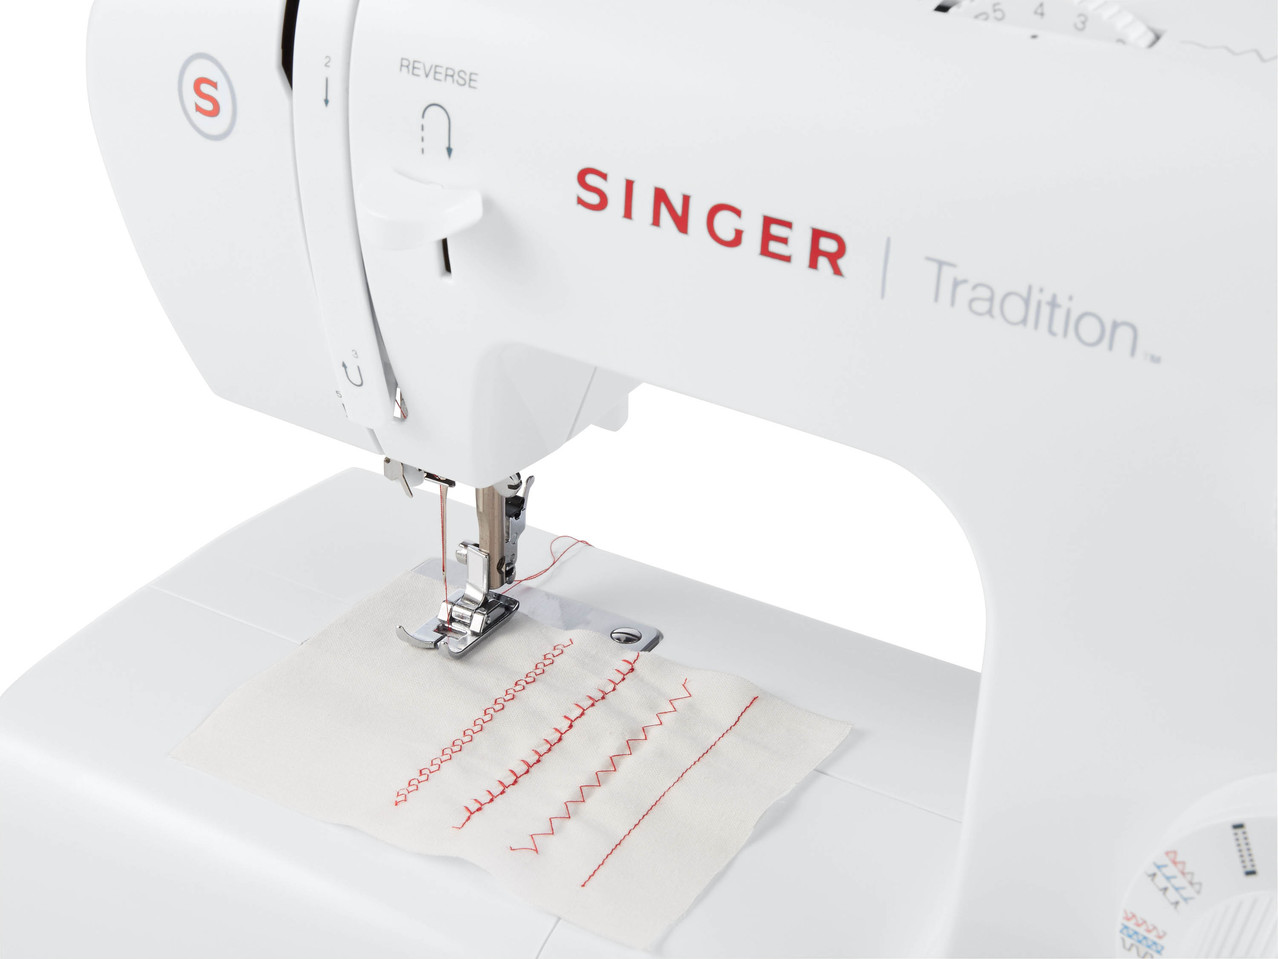 SINGER Sewing Machine